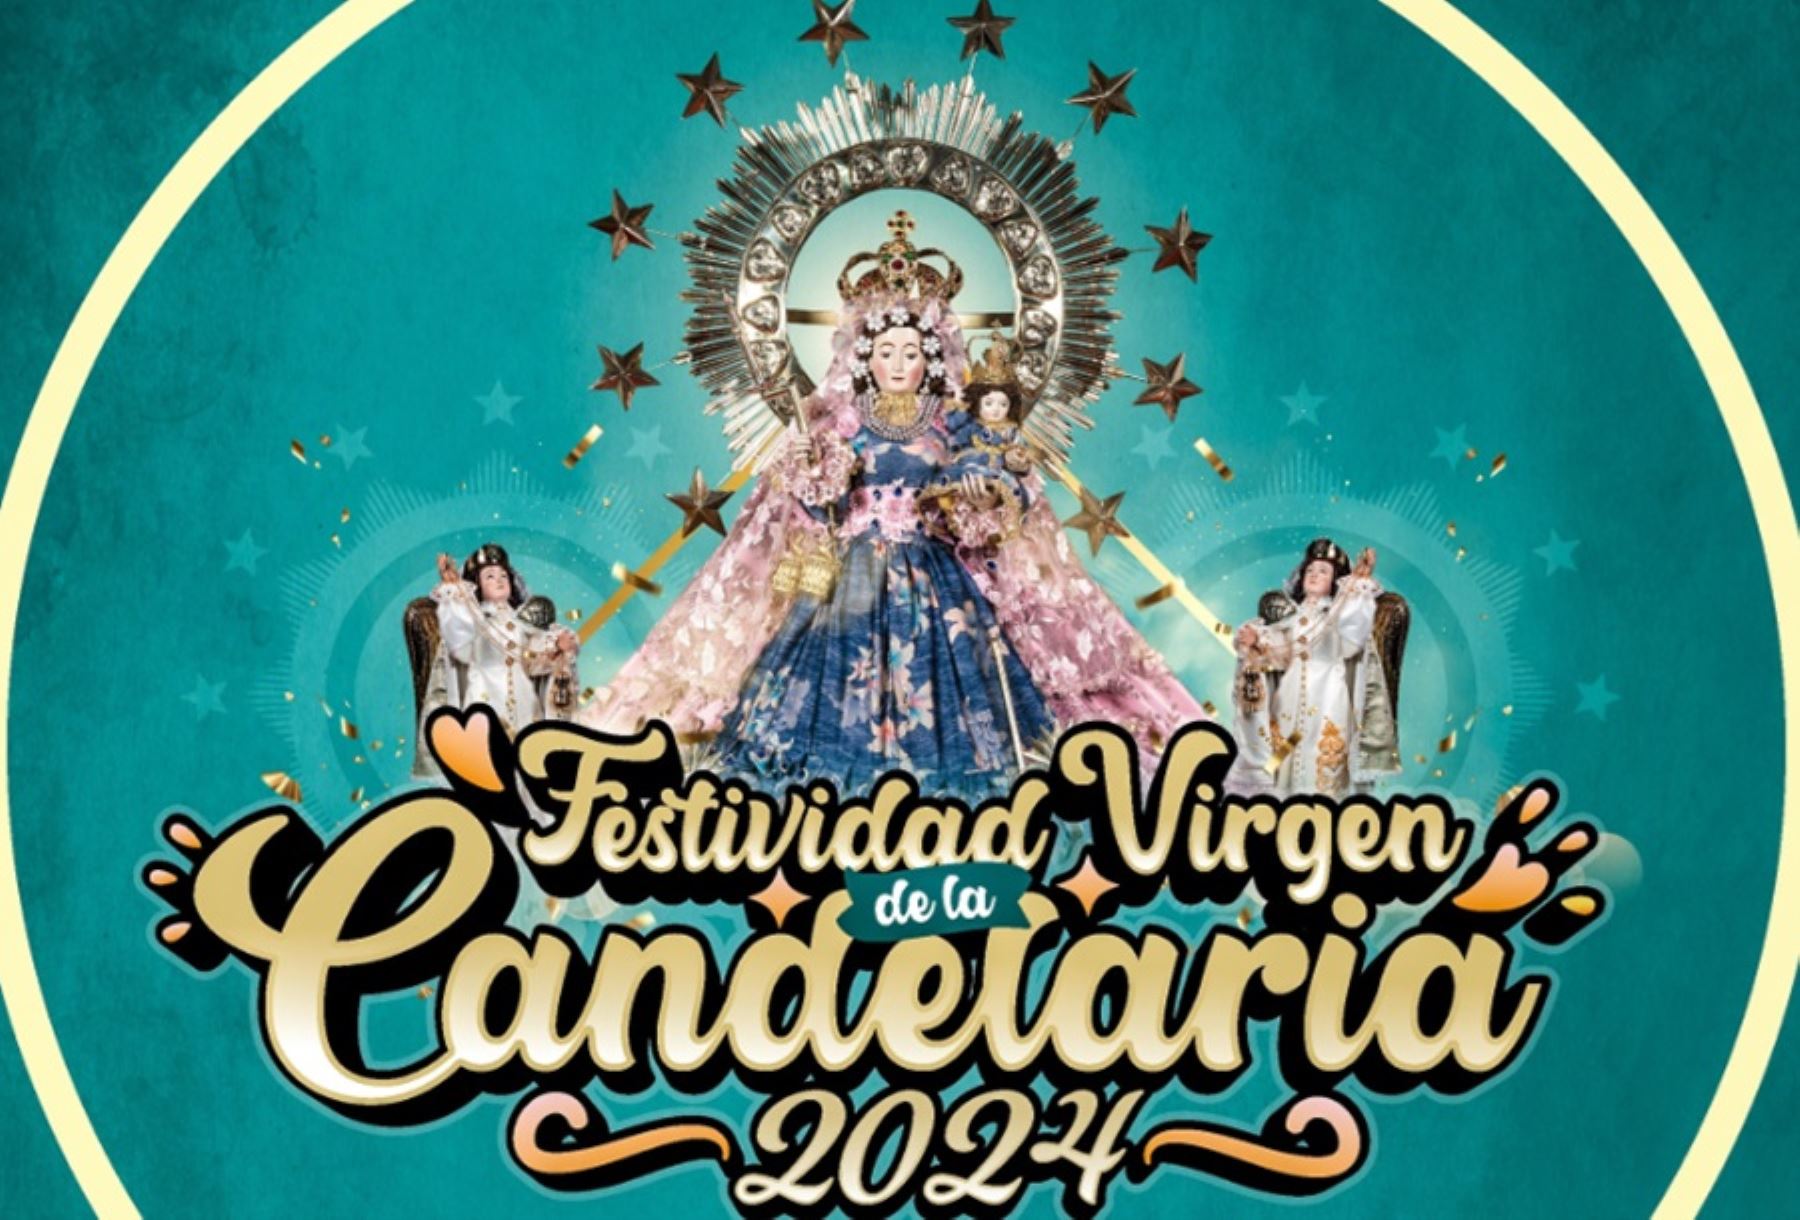 La Festividad en honor de la Virgen de la Candelaria es considerada una de las expresiones religiosas y culturales más importantes y concurridas del Perú, al constituir una manifestación de sincretismo religioso que asocia la fe católica y elementos simbólicos de la cosmovisión andina.